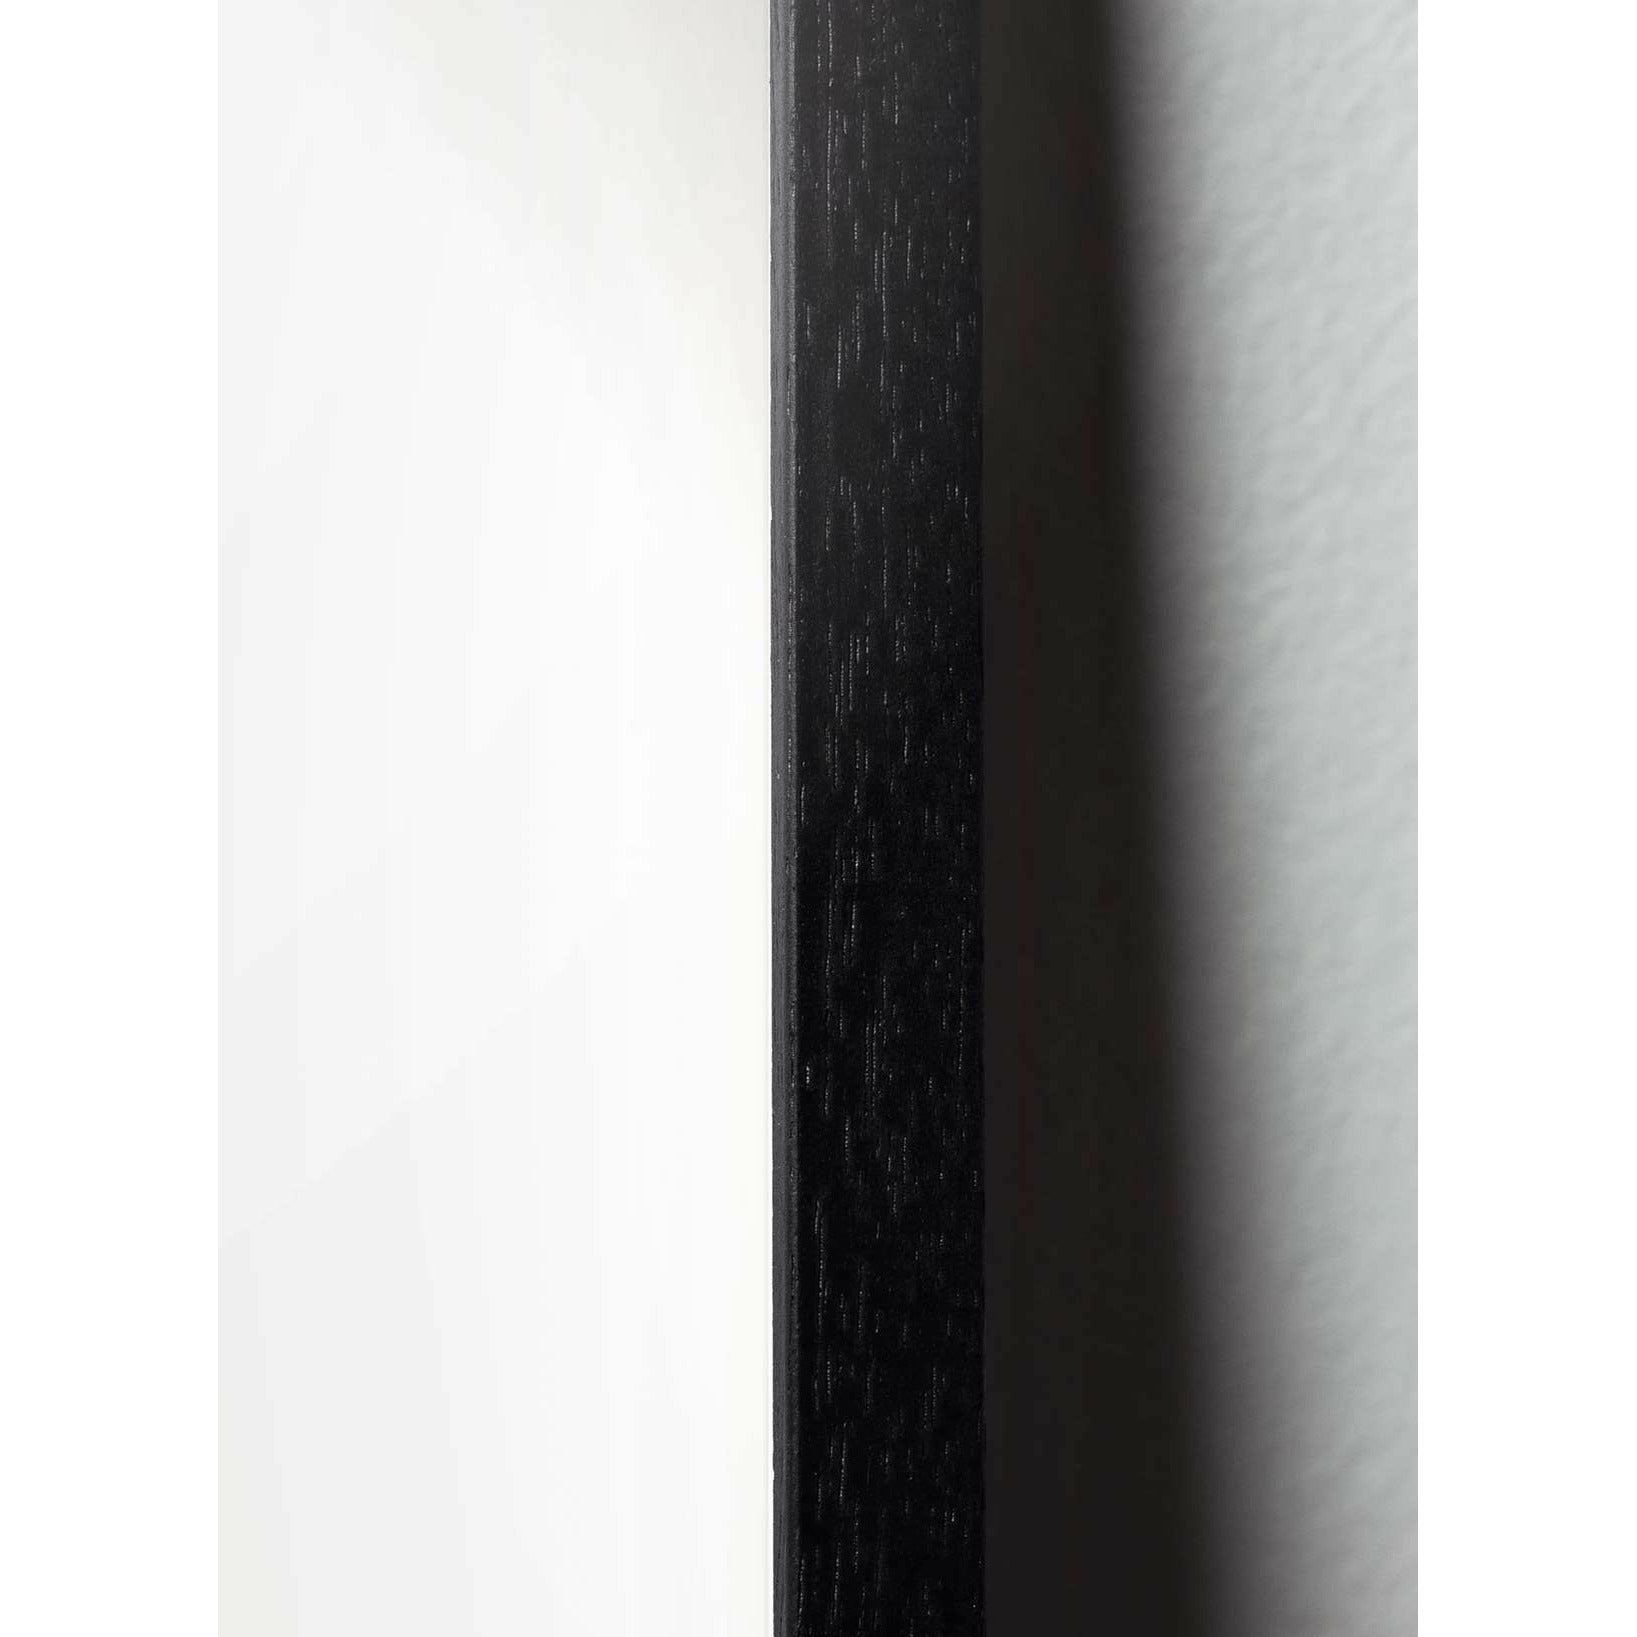 Brainchild Schwan Classic Poster, Rahmen aus schwarz lackiertem Holz 30x40 cm, weiß/weißer Hintergrund